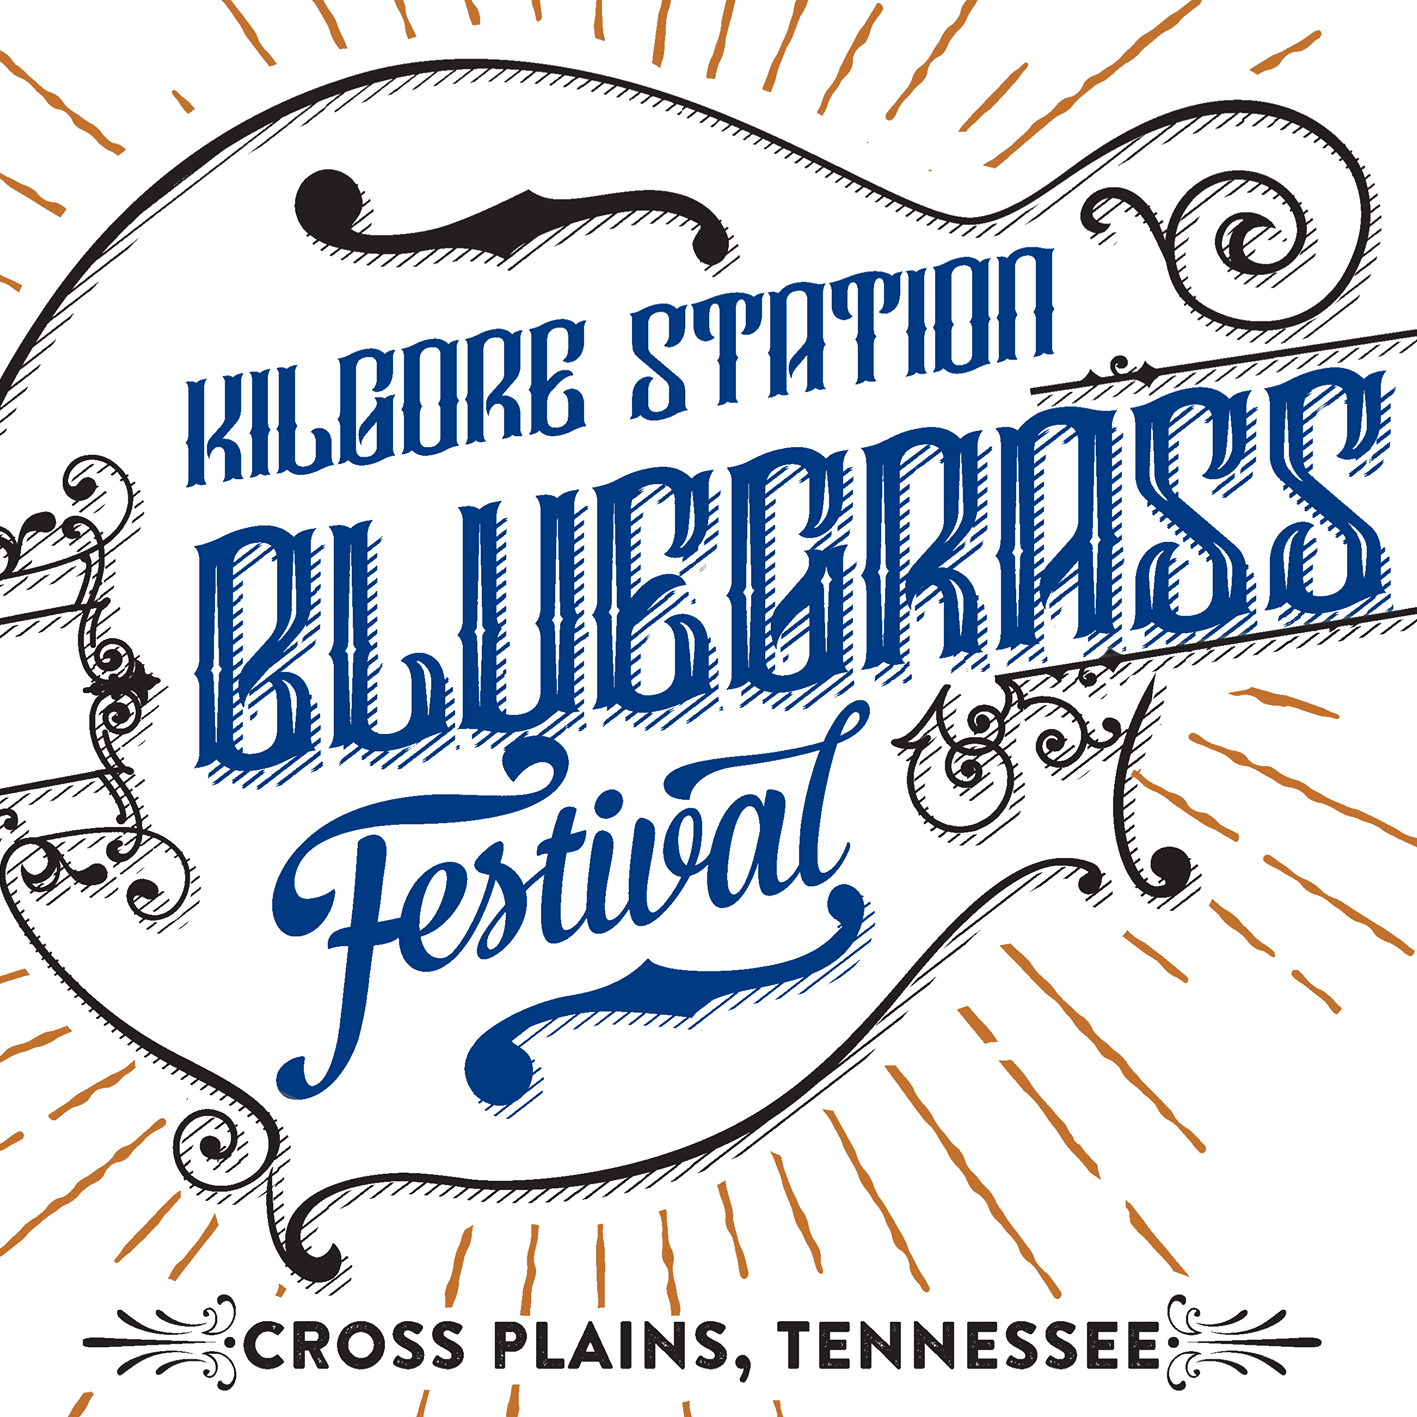 Kilgore Station Bluegrass Festival